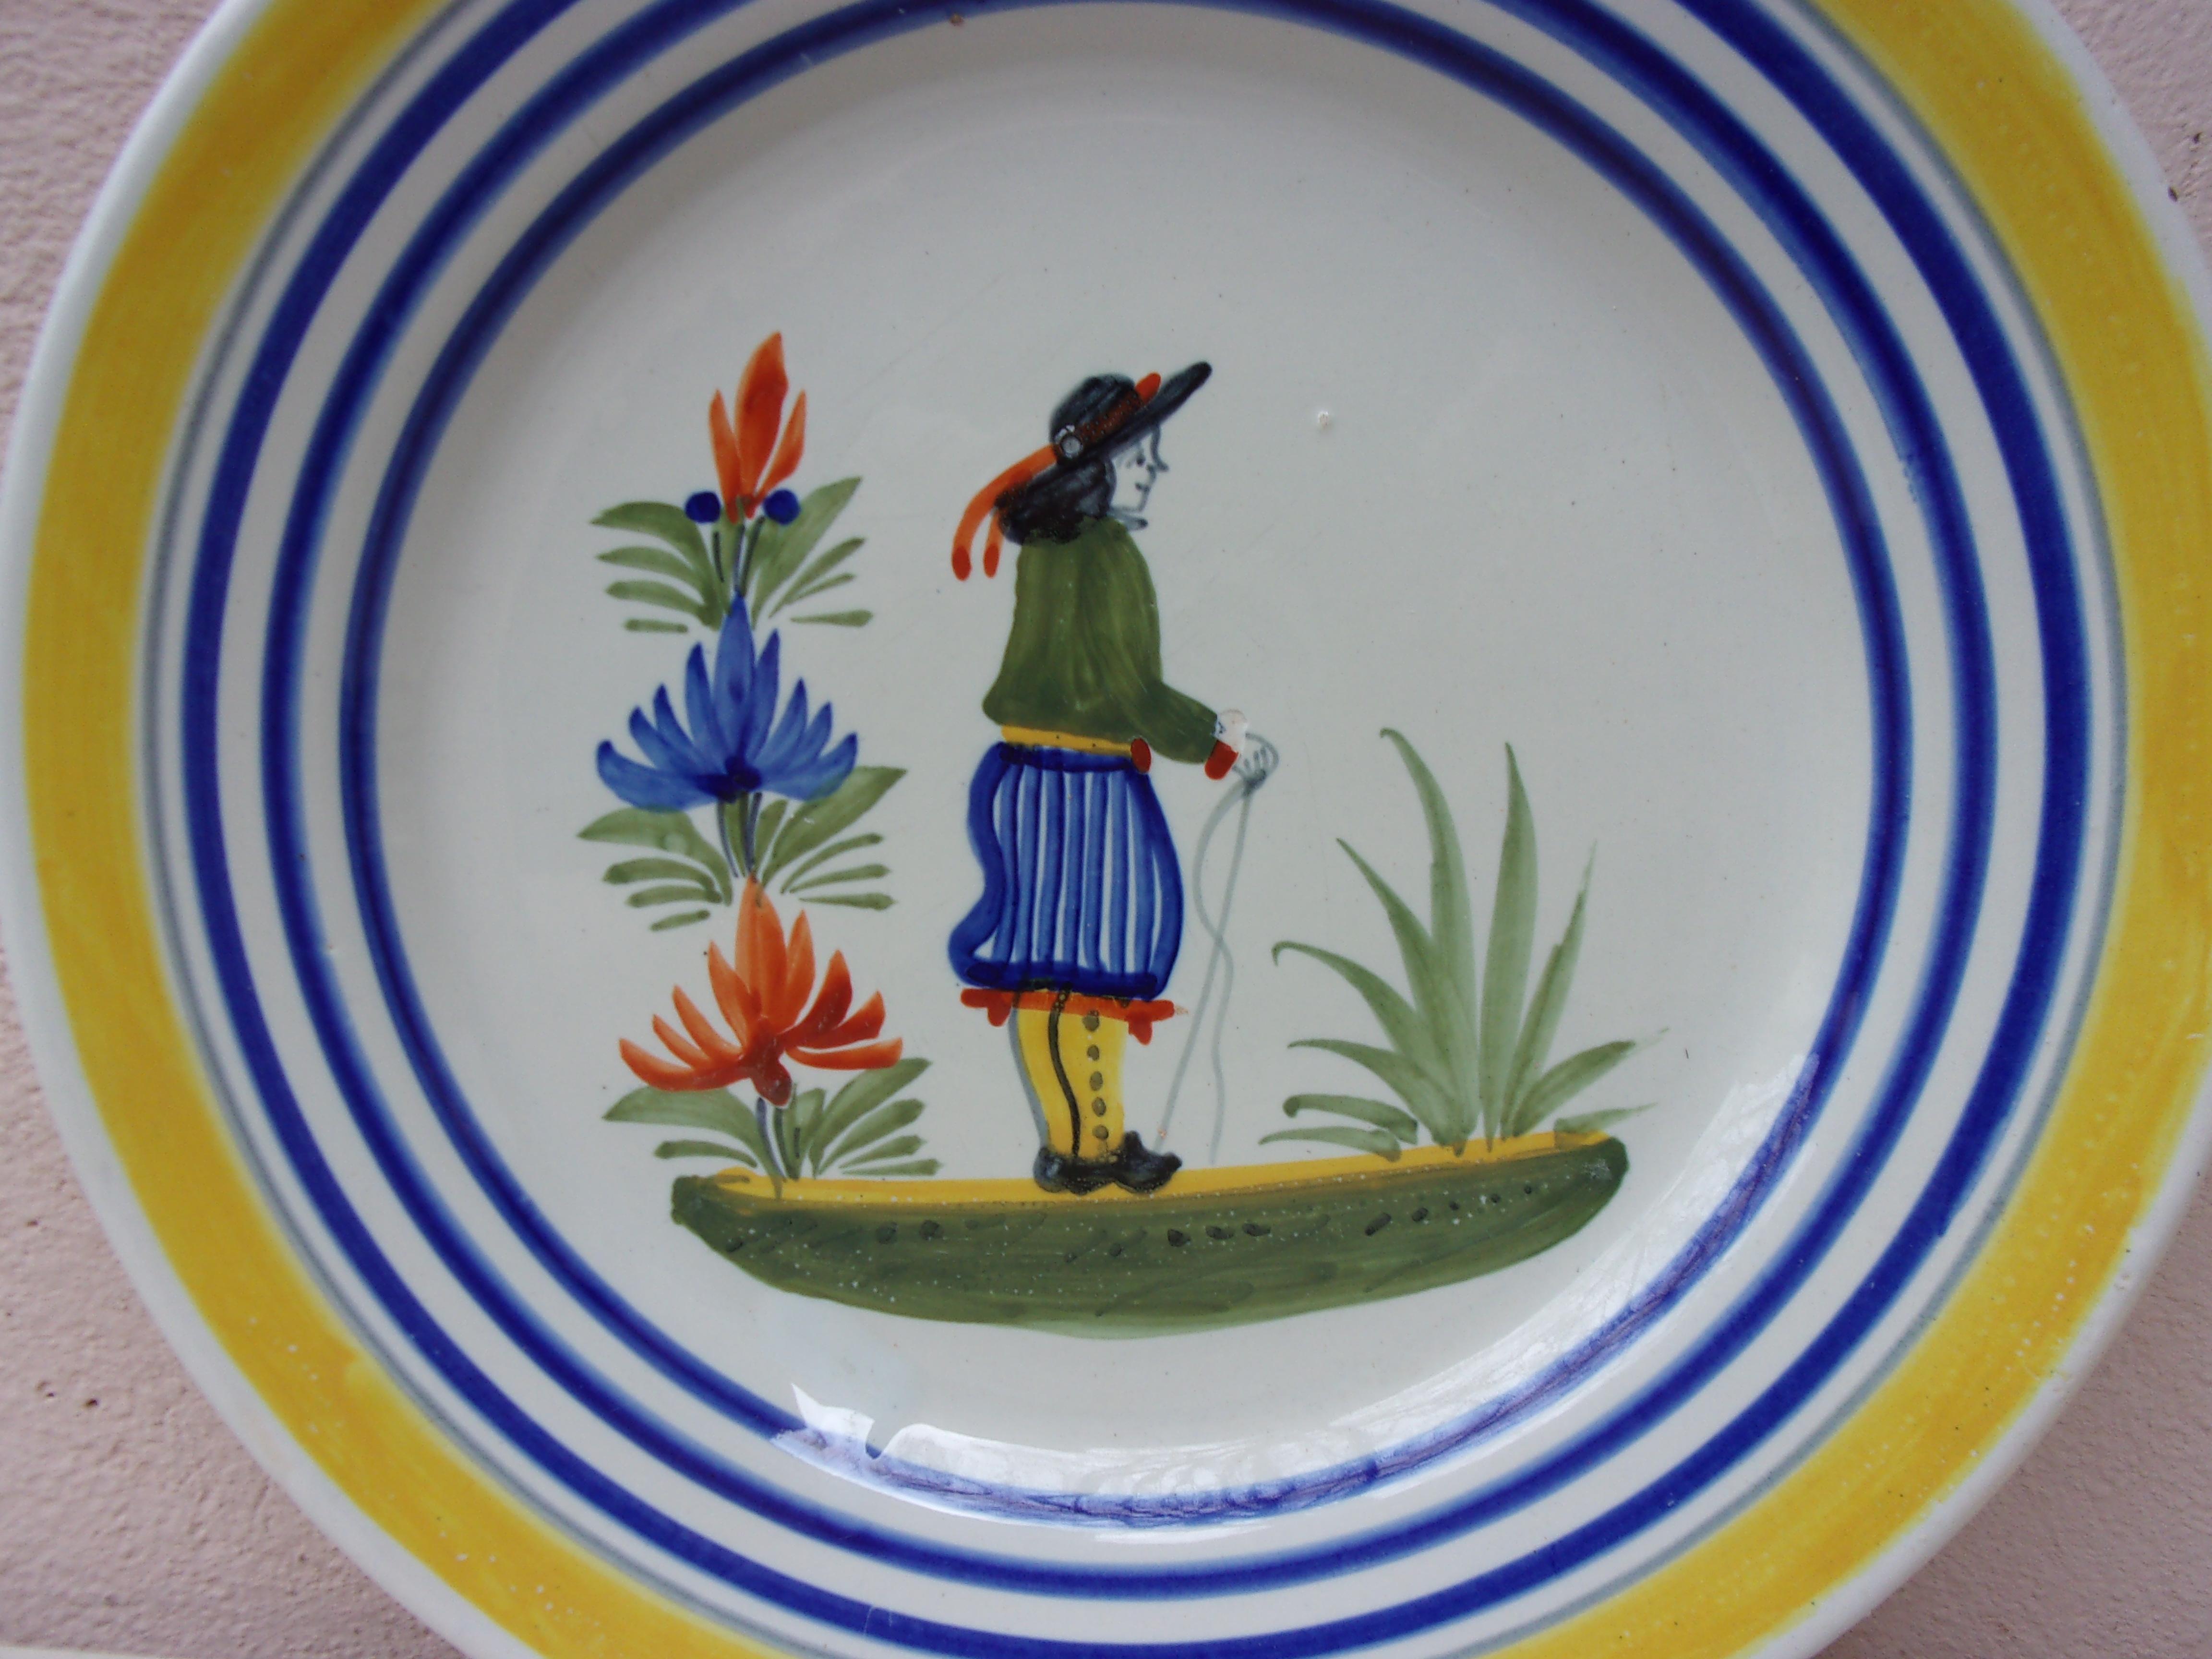 Assiette en faïence française représentant un fermier en costume avec des fleurs, signée Henriot Quimper, vers 1950.
Bordure jaune colorée et lignes bleues.
 